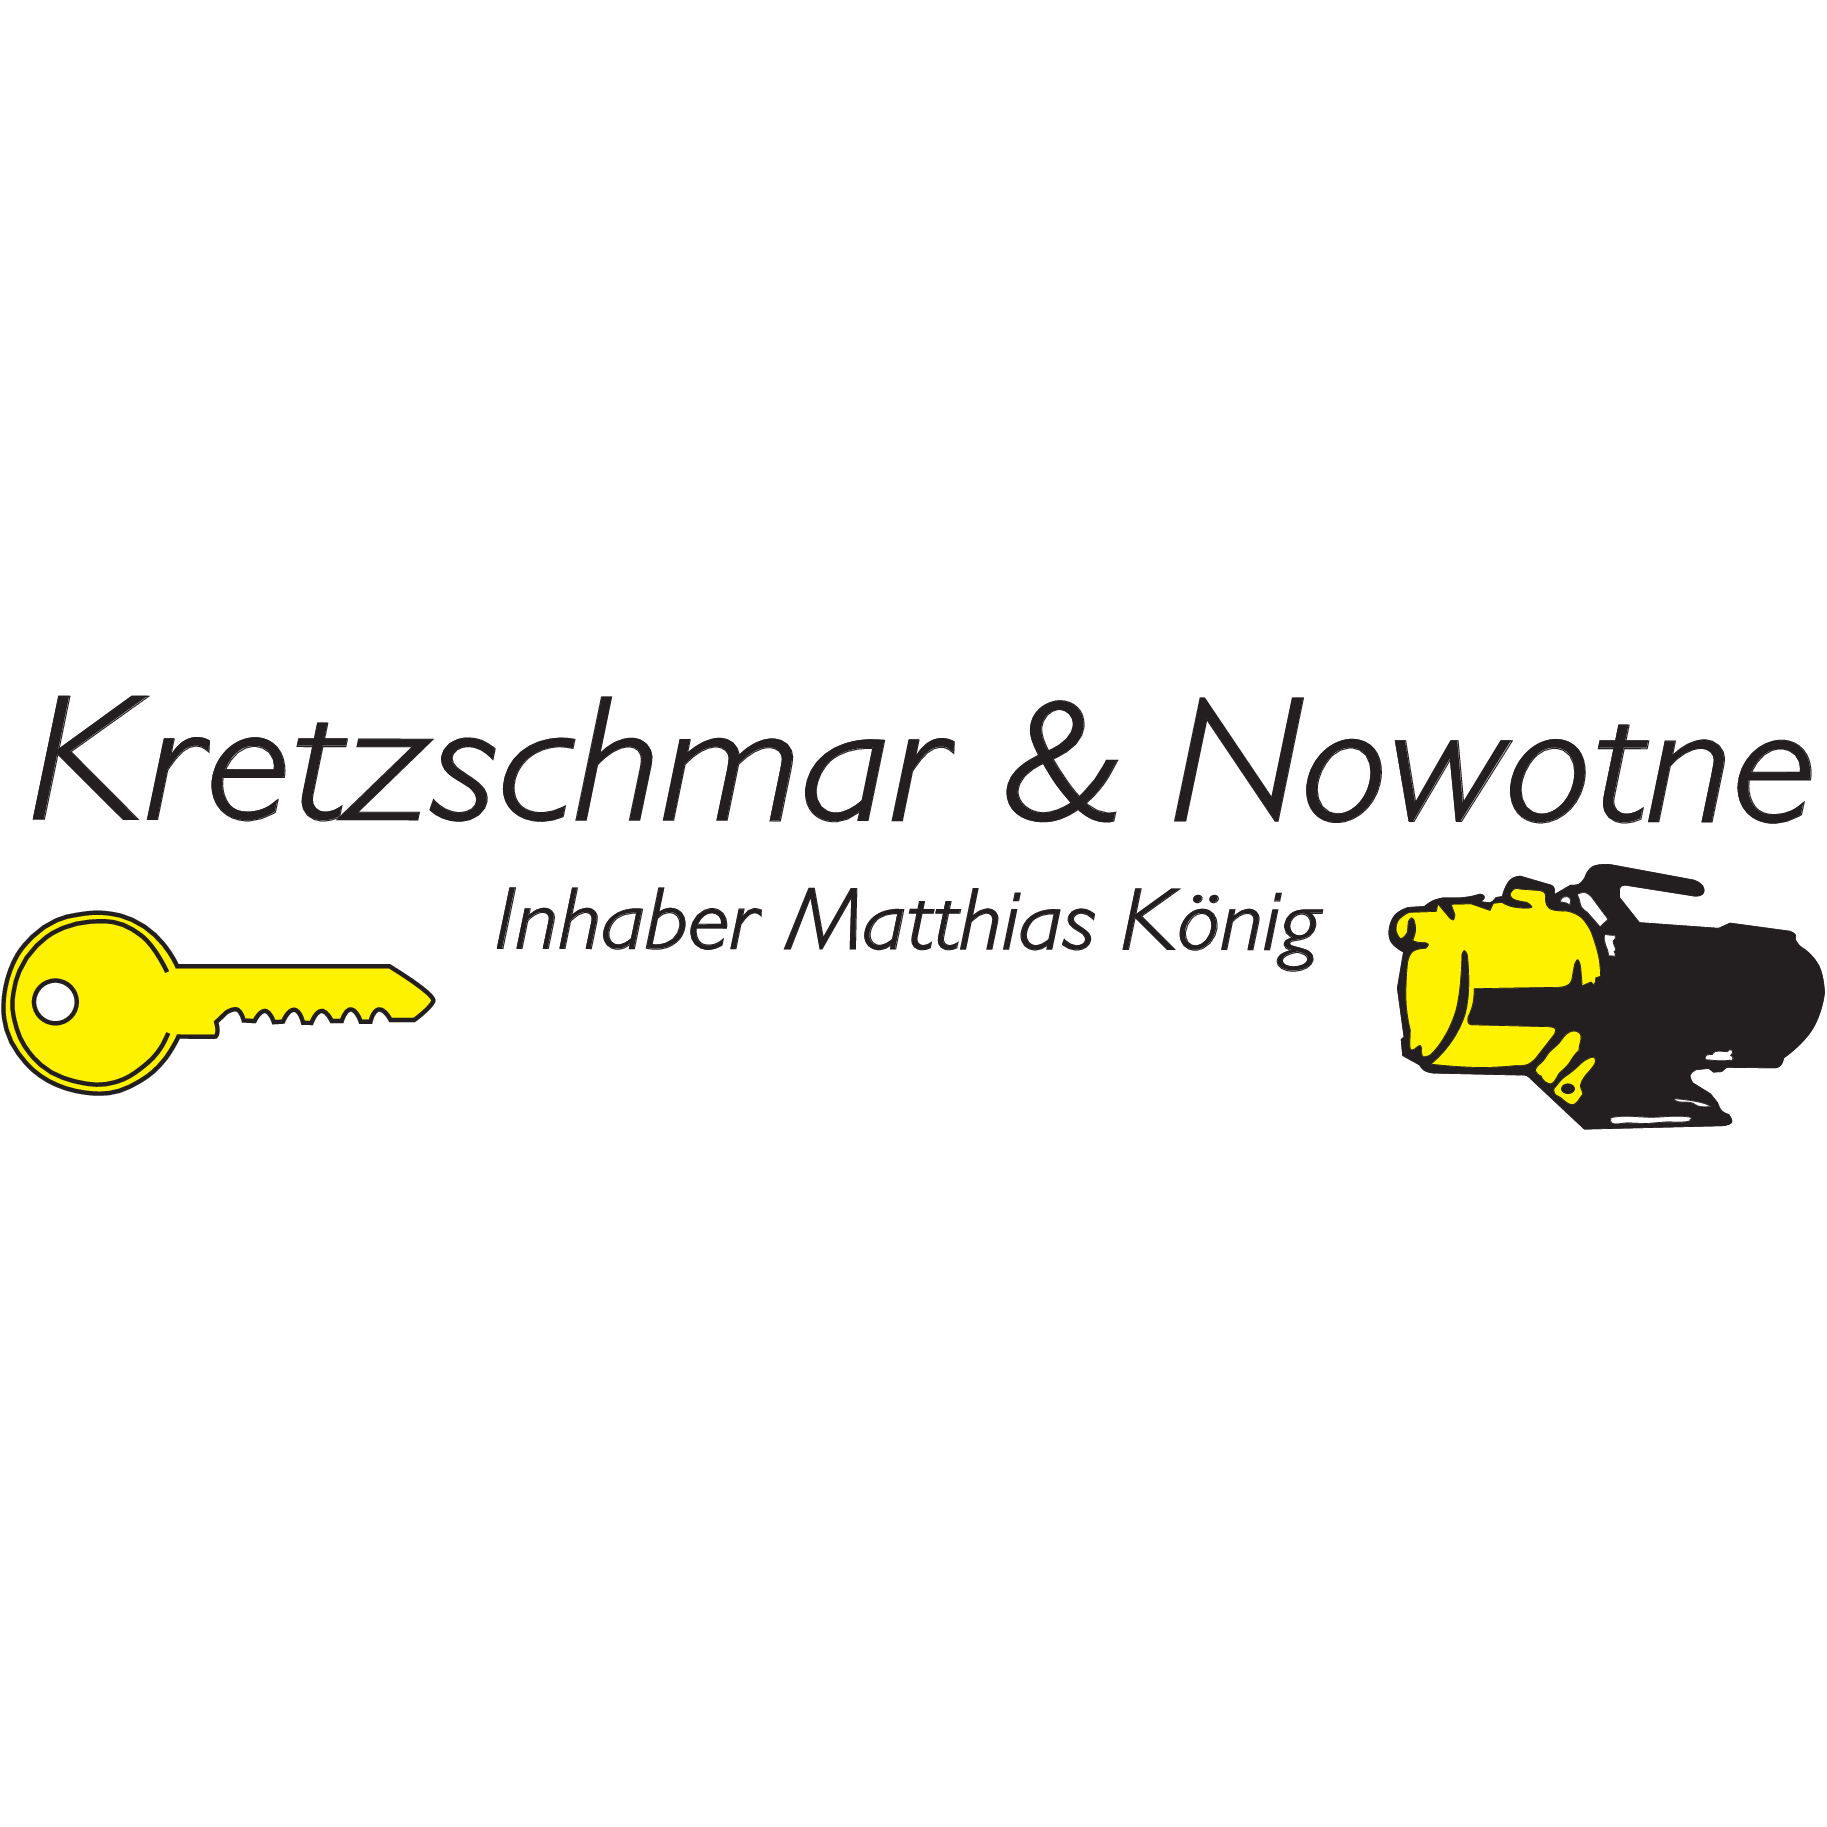 Kretzschmar & Nowotne Logo